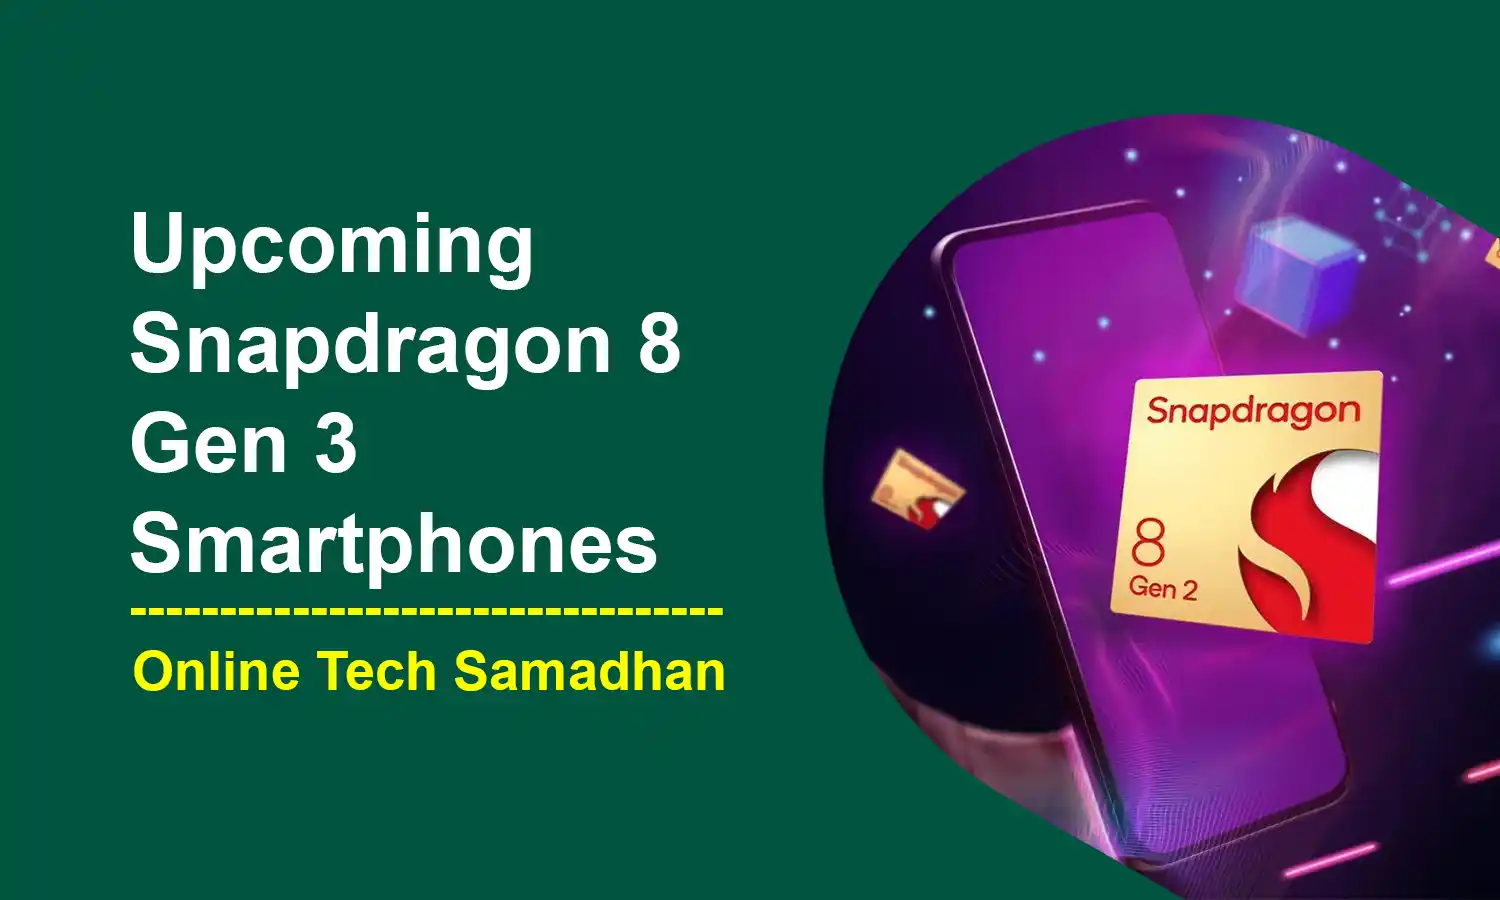 Upcoming Snapdragon 8 Gen 3 Smartphones